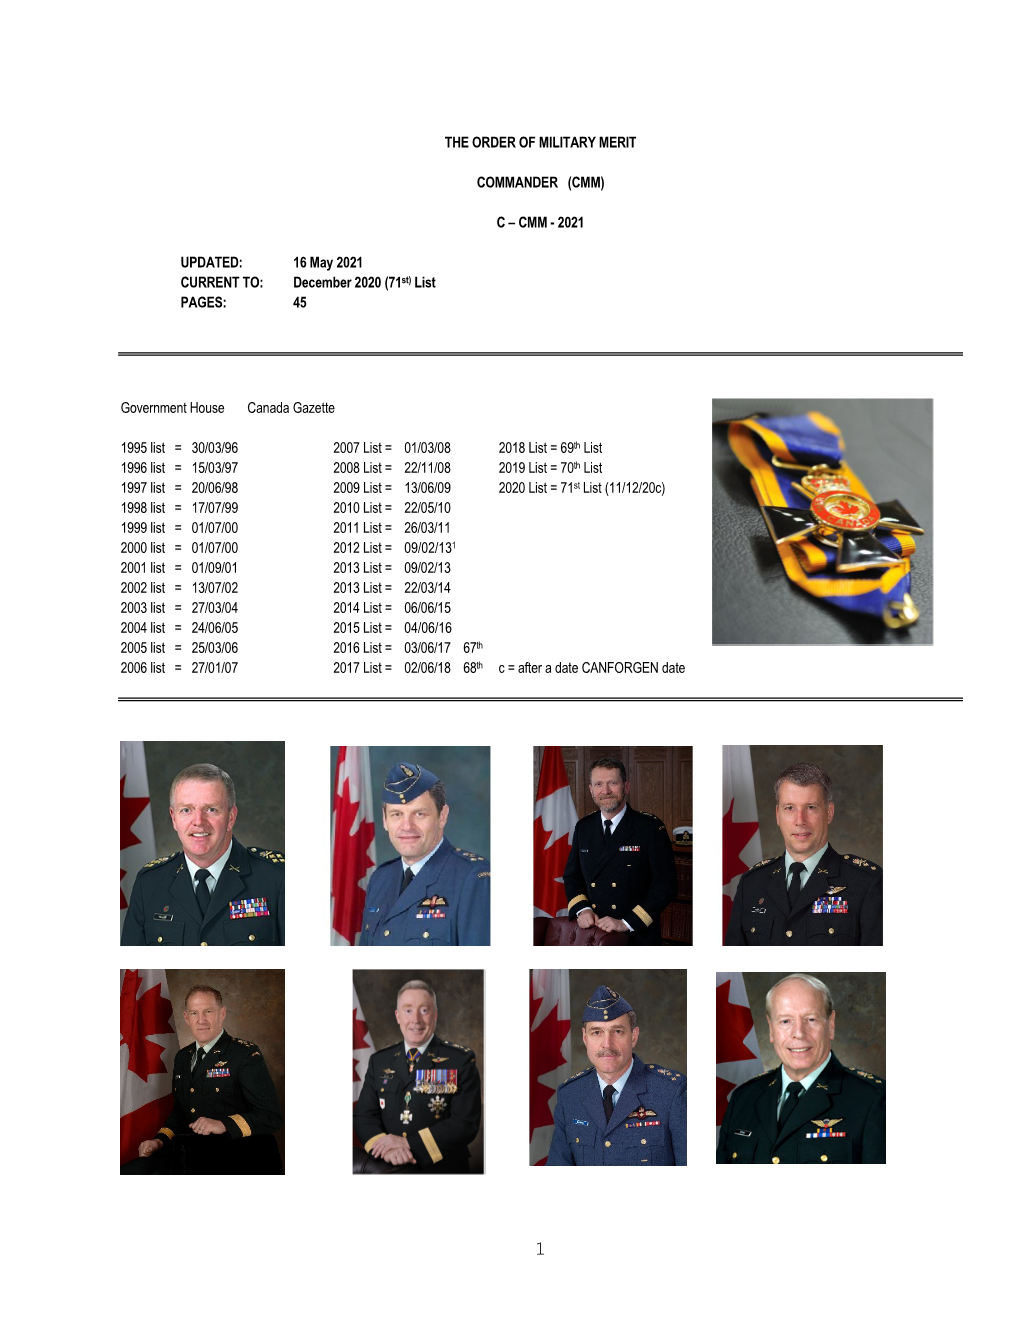 The Order of Military Merit Commander